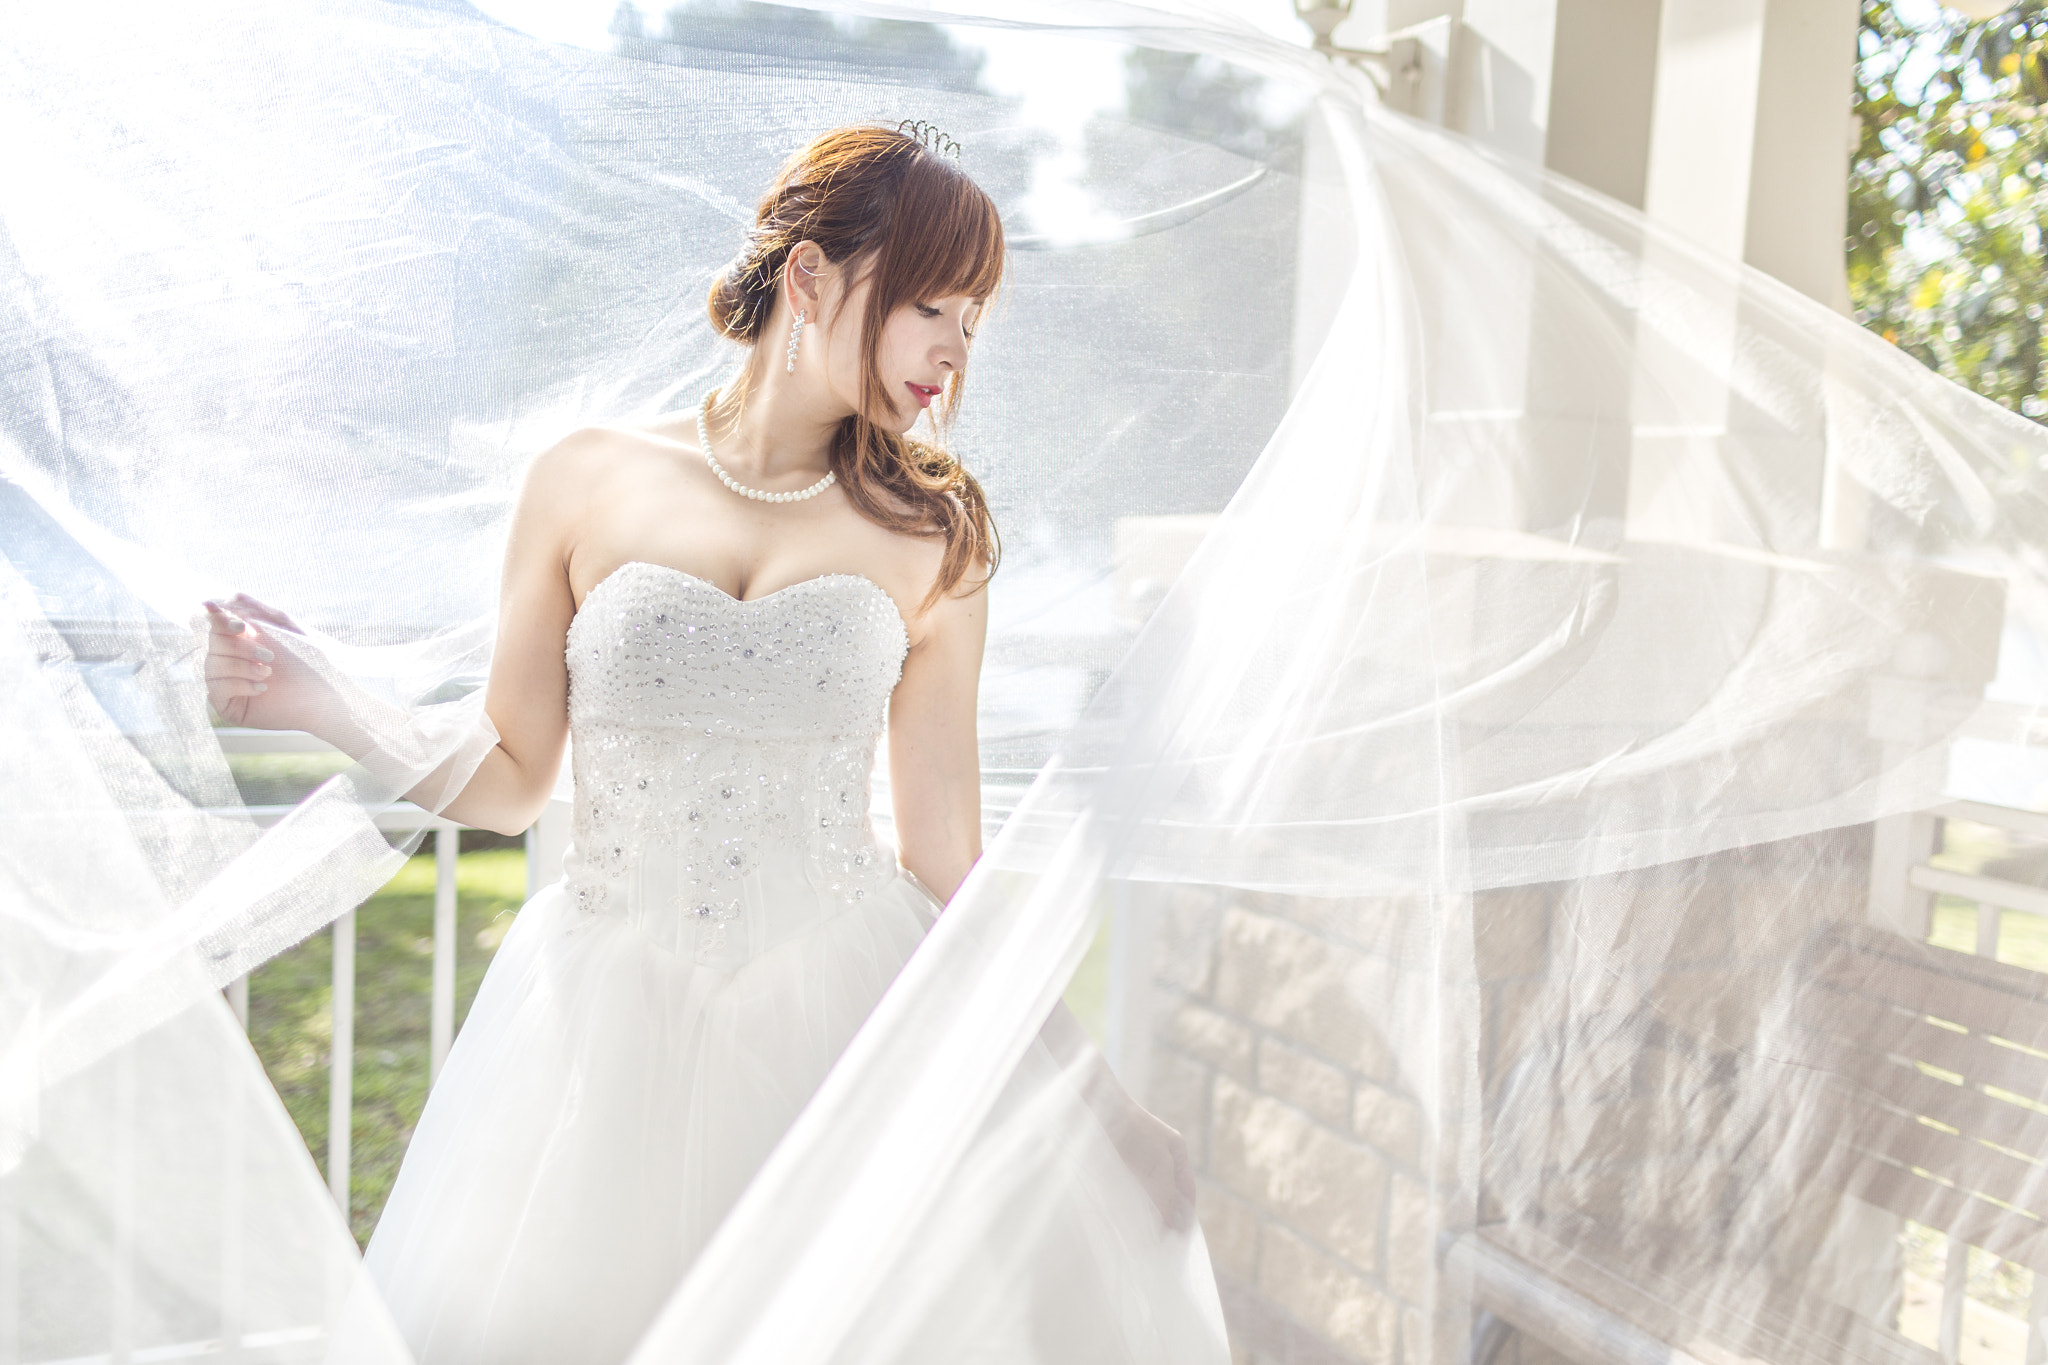 Canon EOS 6D sample photo. Bride photography